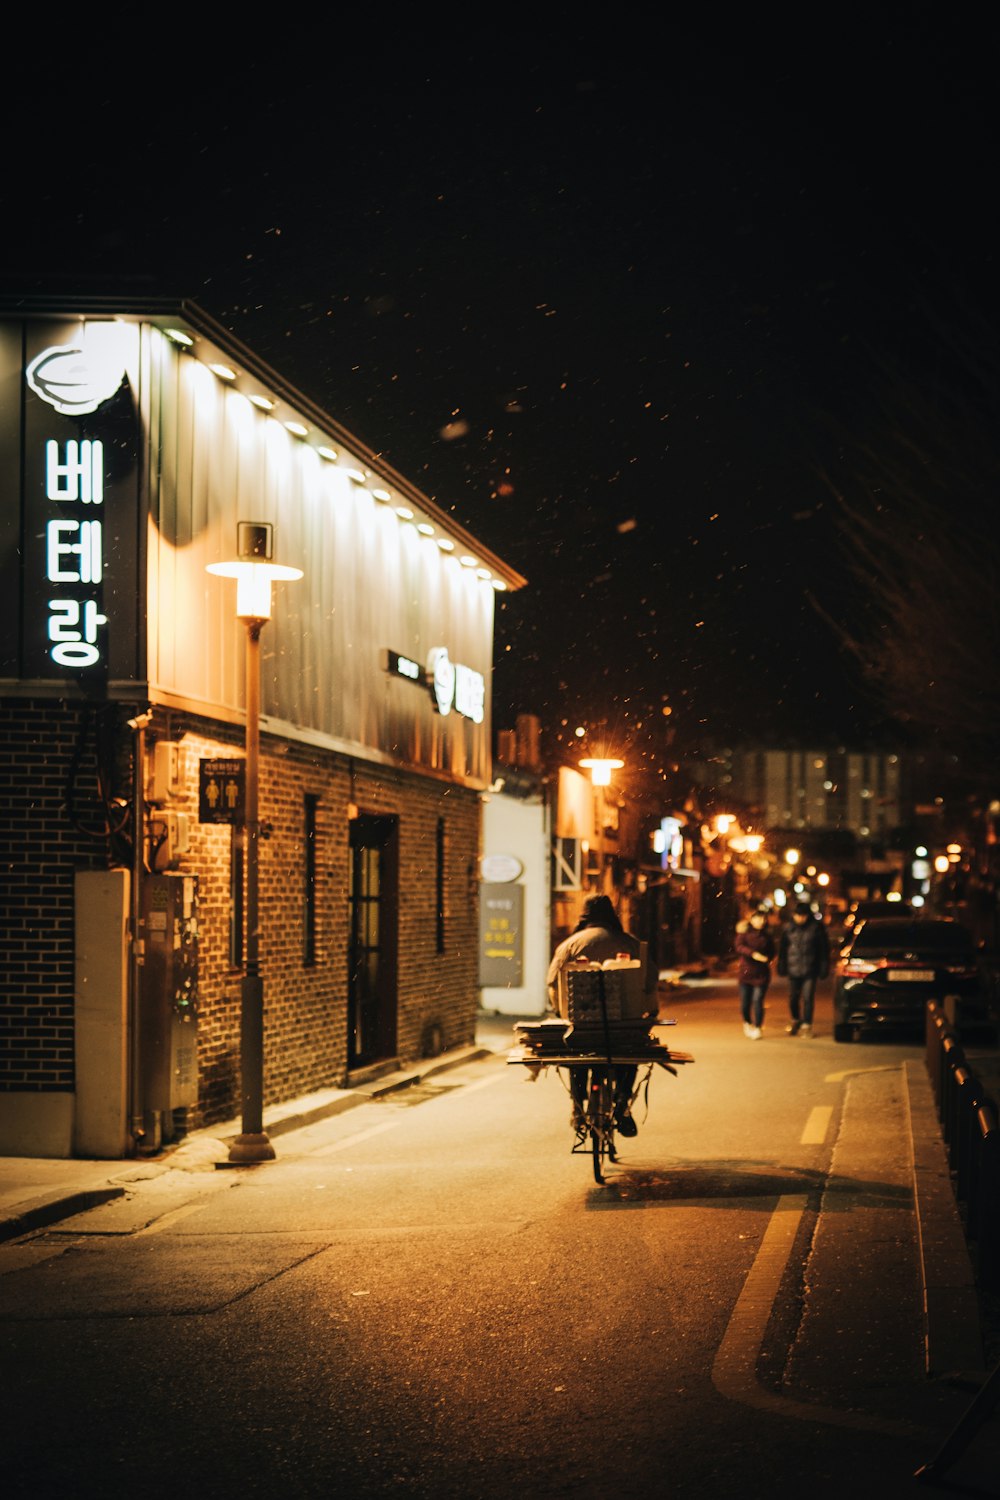 Casa coreana perto do poste de luz